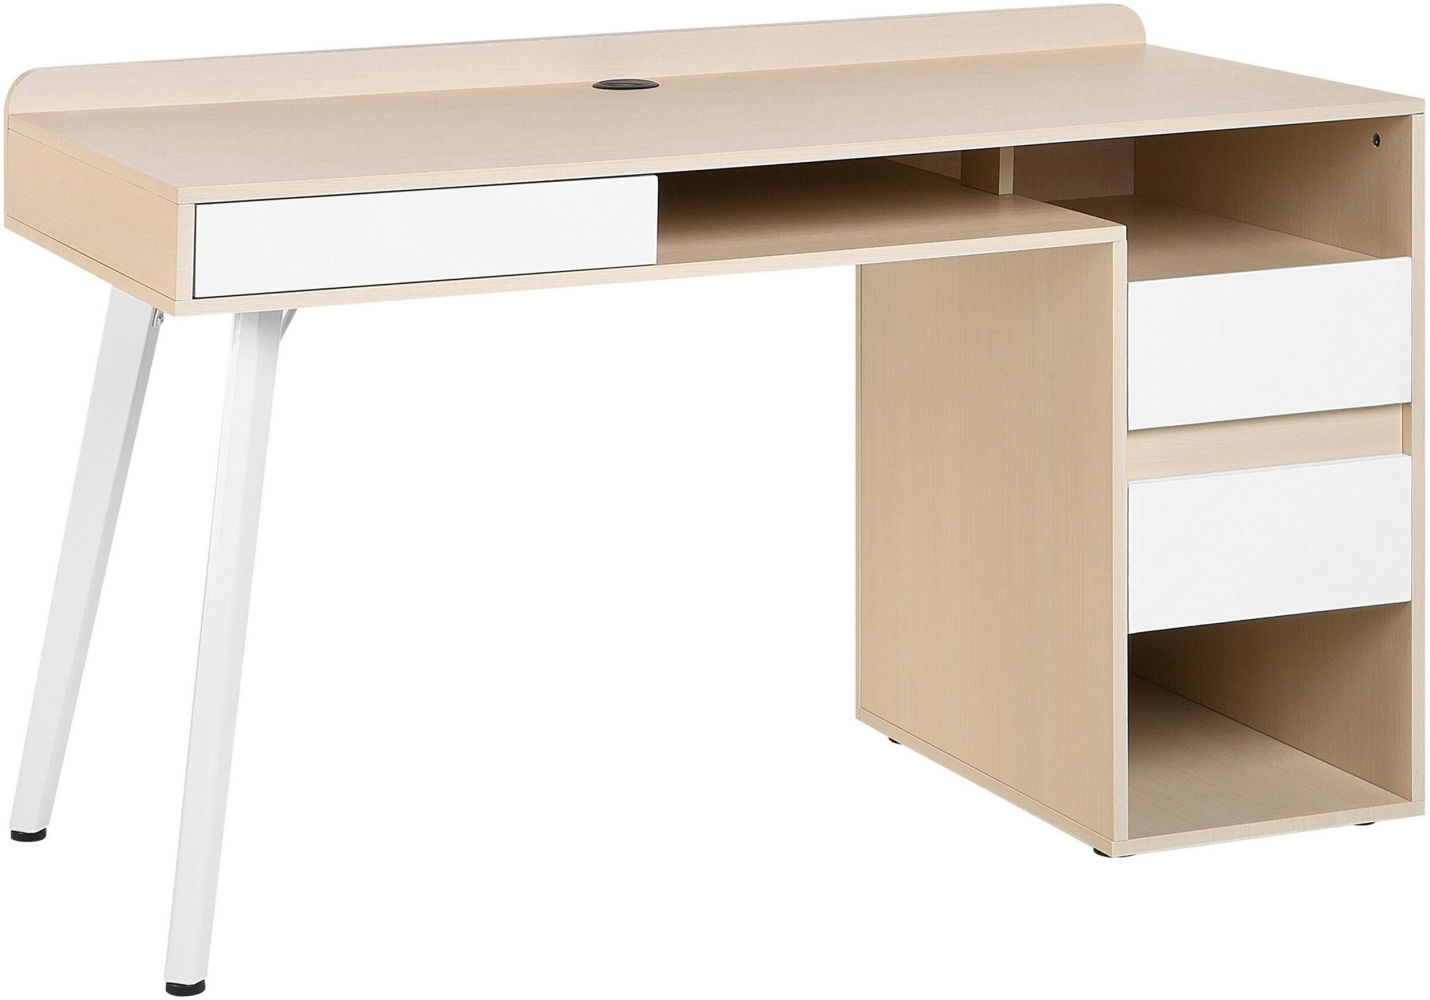 Schreibtisch weiß / heller Holzfarbton 130 x 60 cm 3 Schubladen CARACAS Bild 1